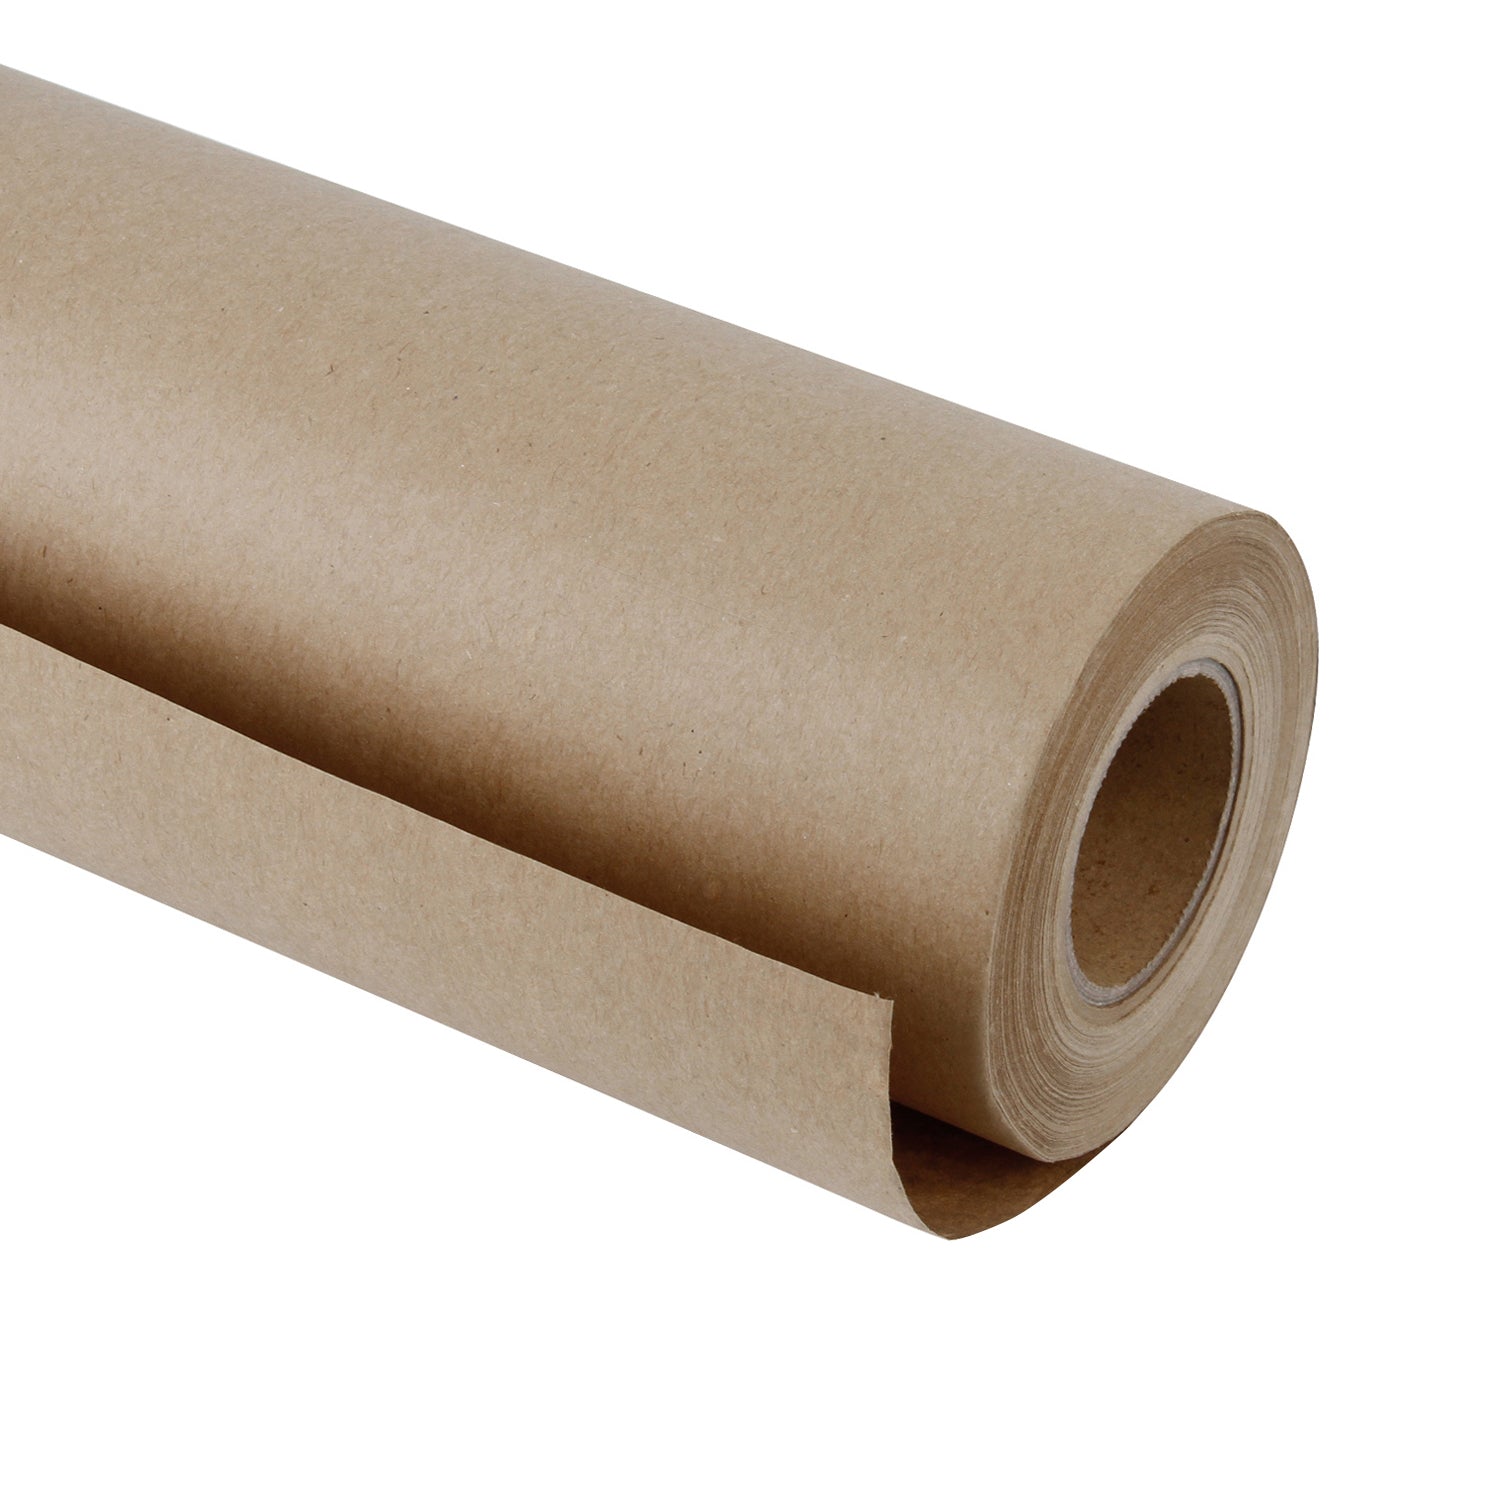 Zezazu Brown Kraft Paper Roll 45 Cm X 30,5 M 100 G, Ideal for